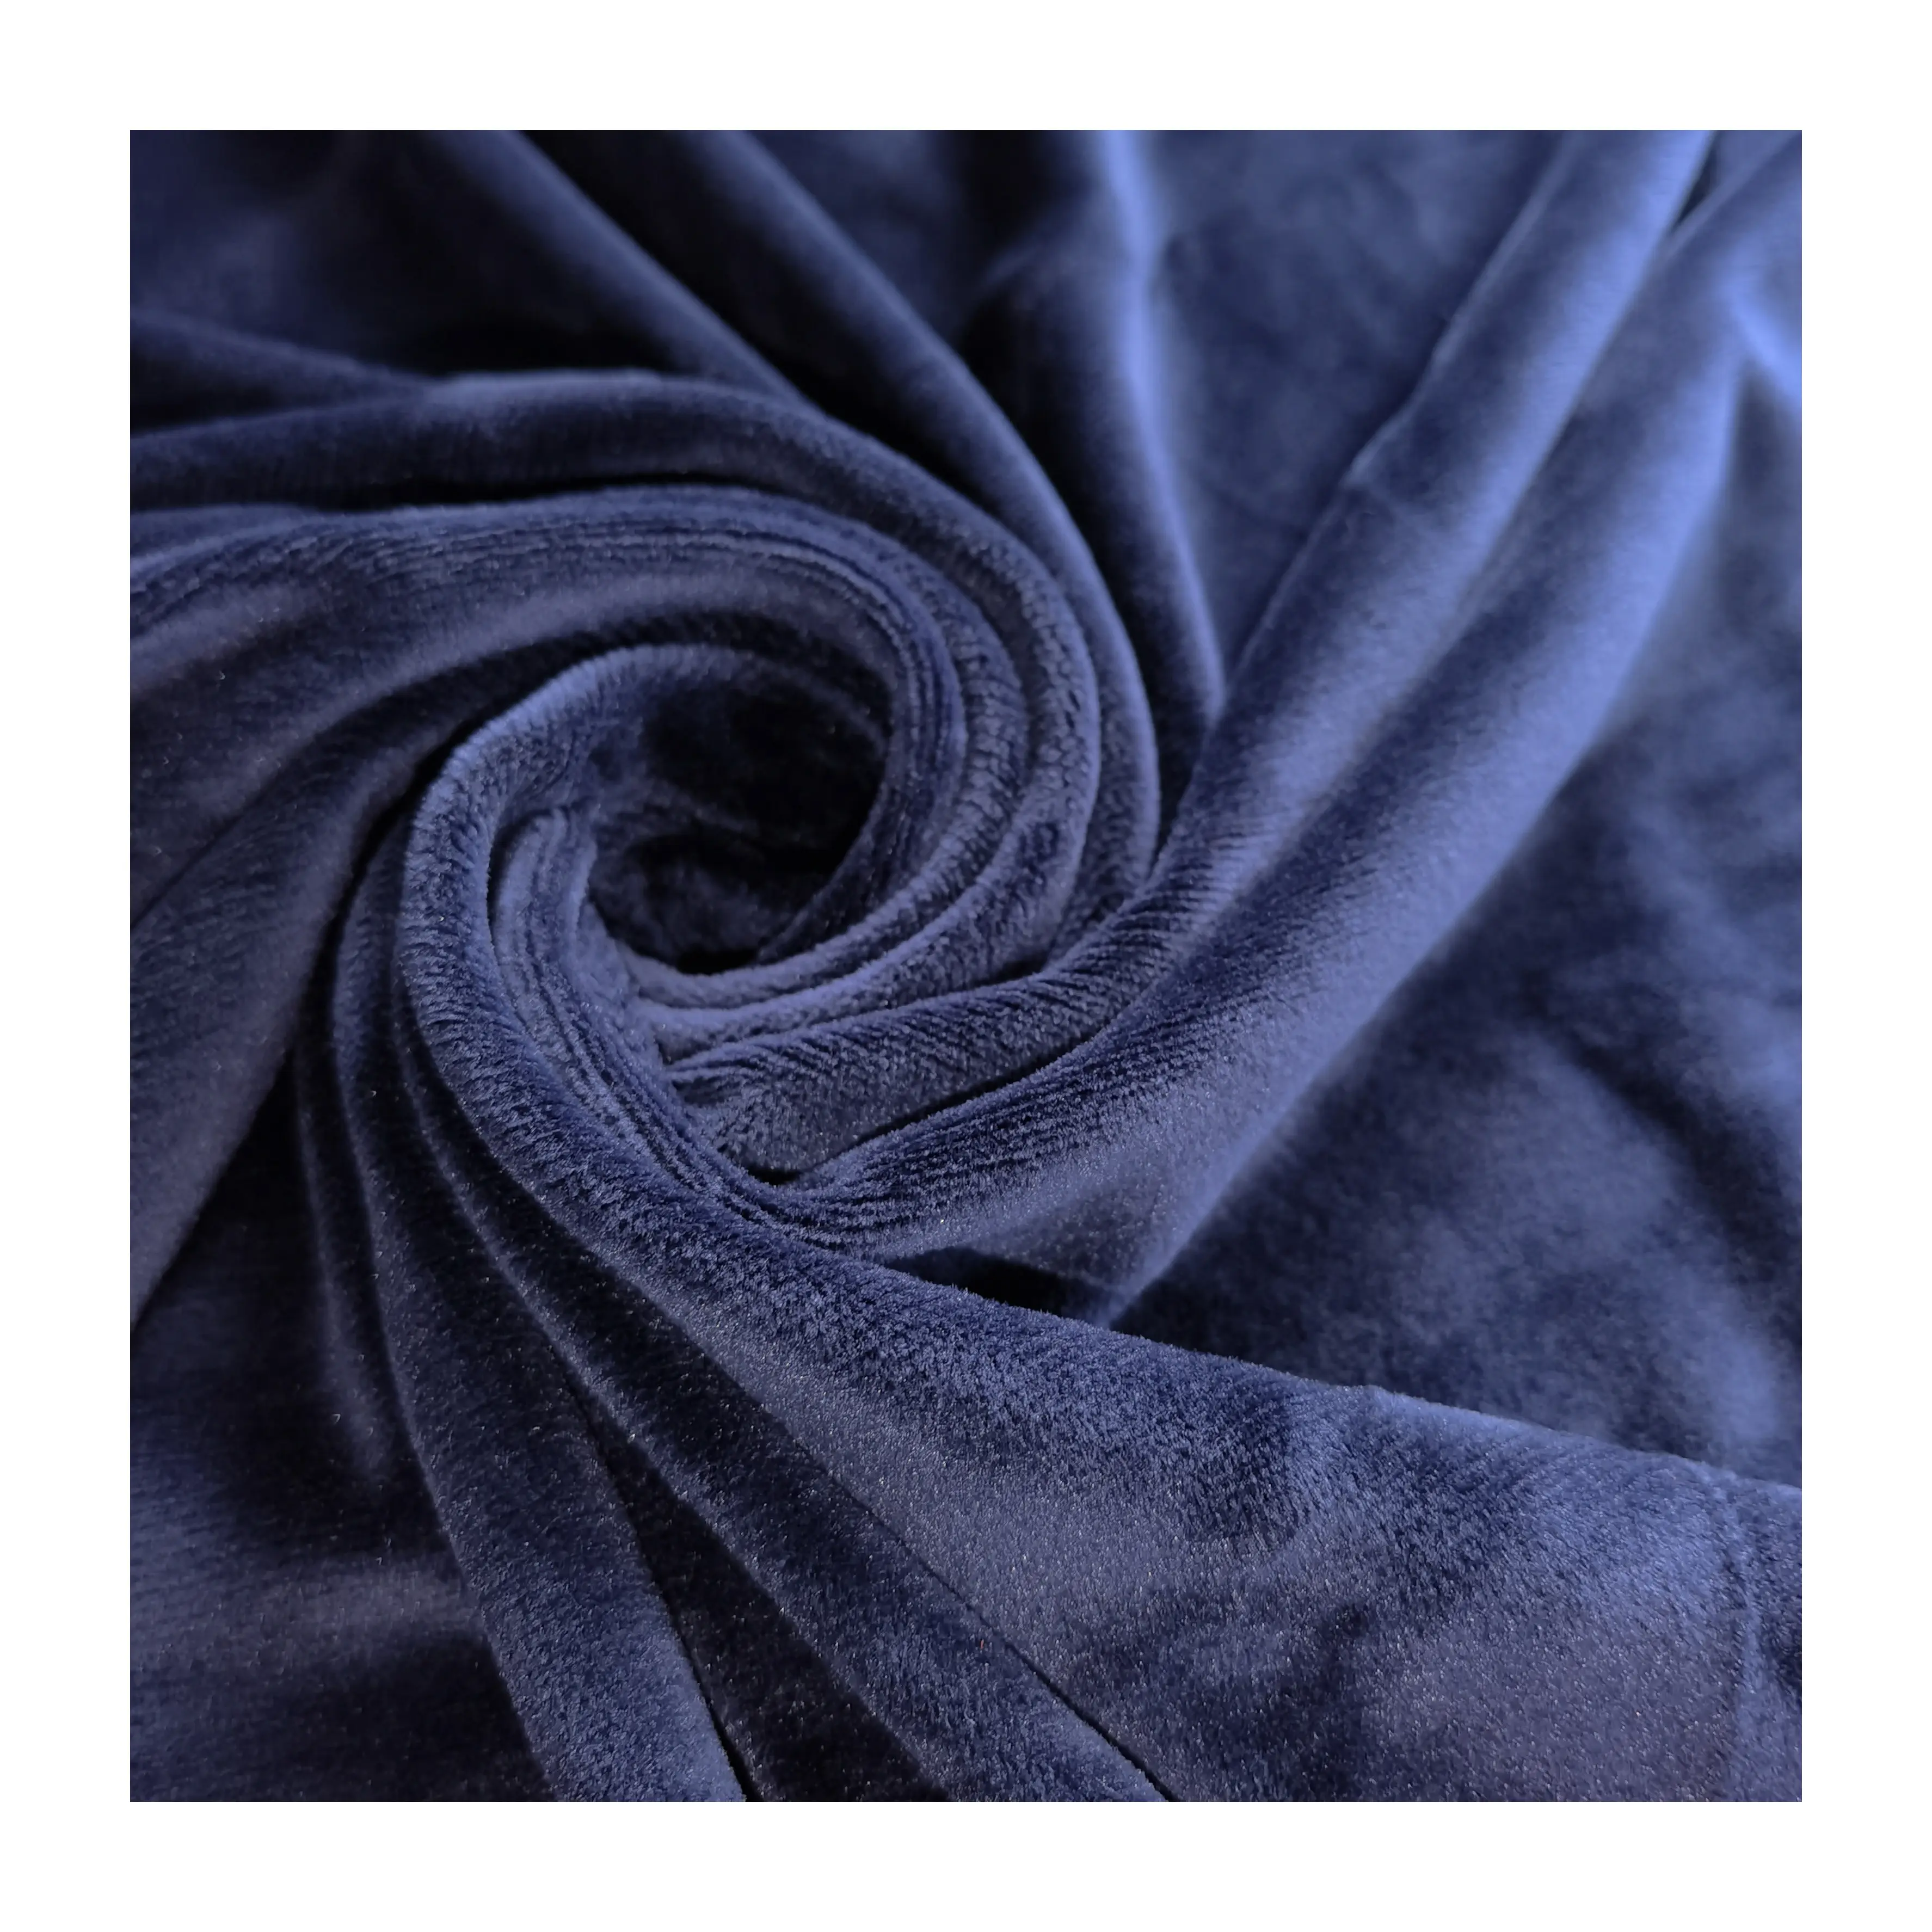 Fabrika kaynağı kısa peluş düz renk süper yumuşak streç kadife giysi kumaşı